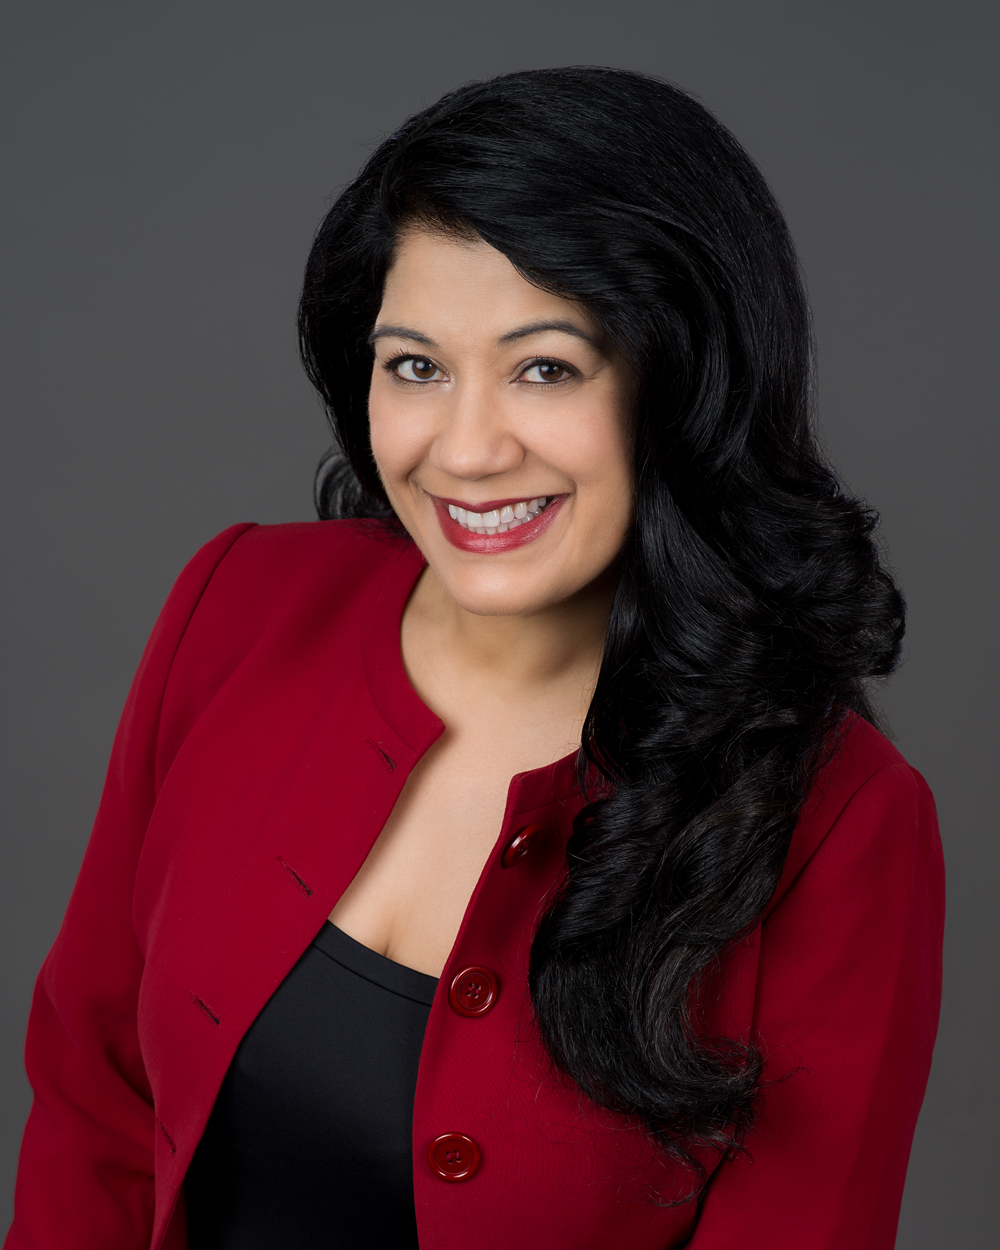 Dr. Supriya Sharma, Chief Medical Advisor, Health Canada